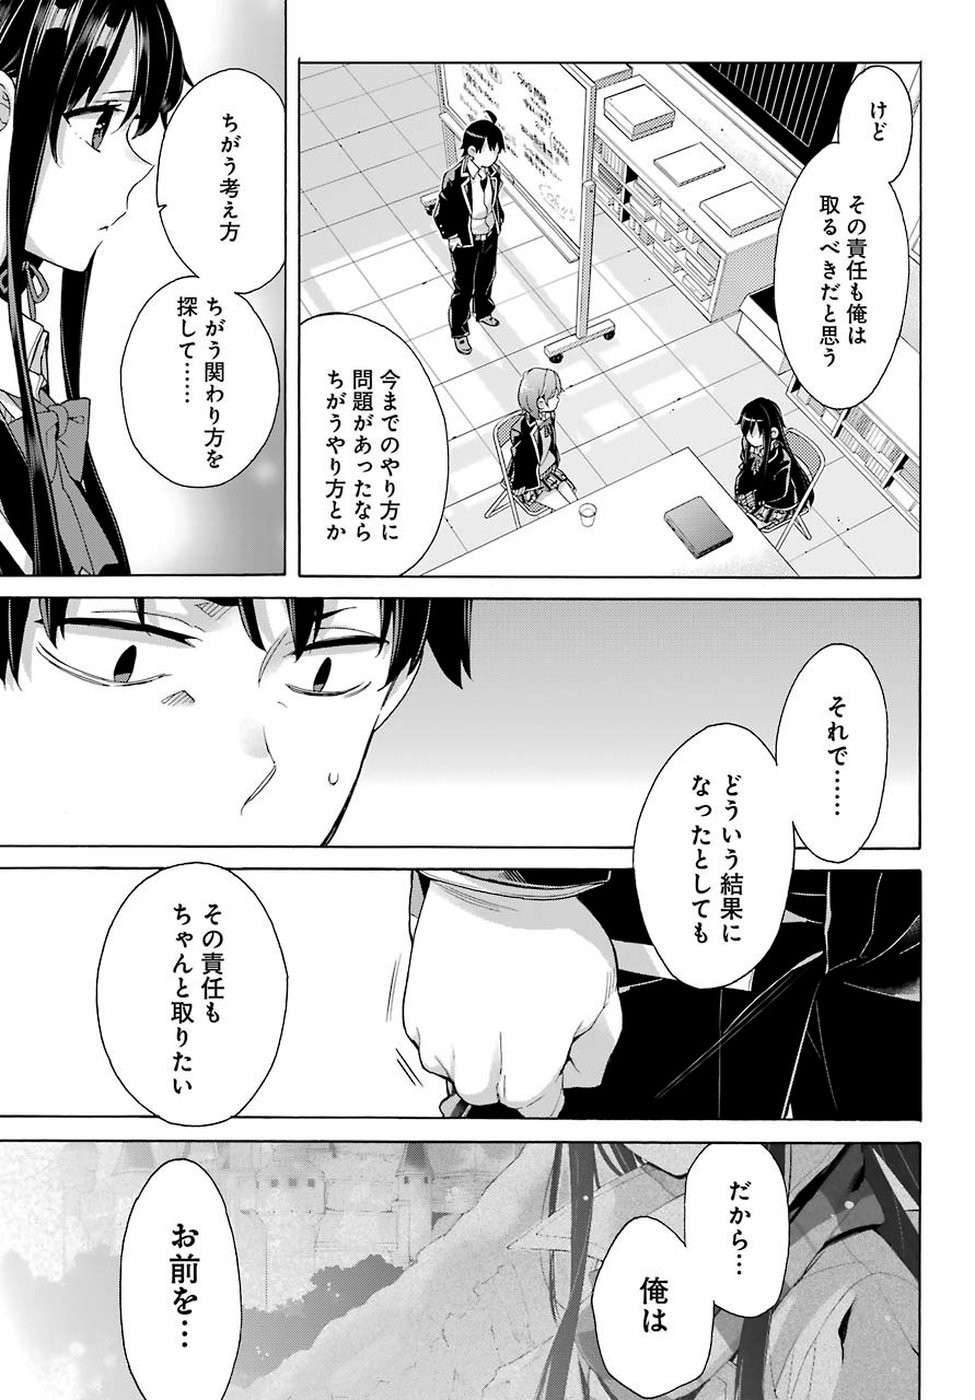 Yahari Ore no Seishun Rabukome wa Machigatte Iru. - Monologue - Chapter 78 - Page 15